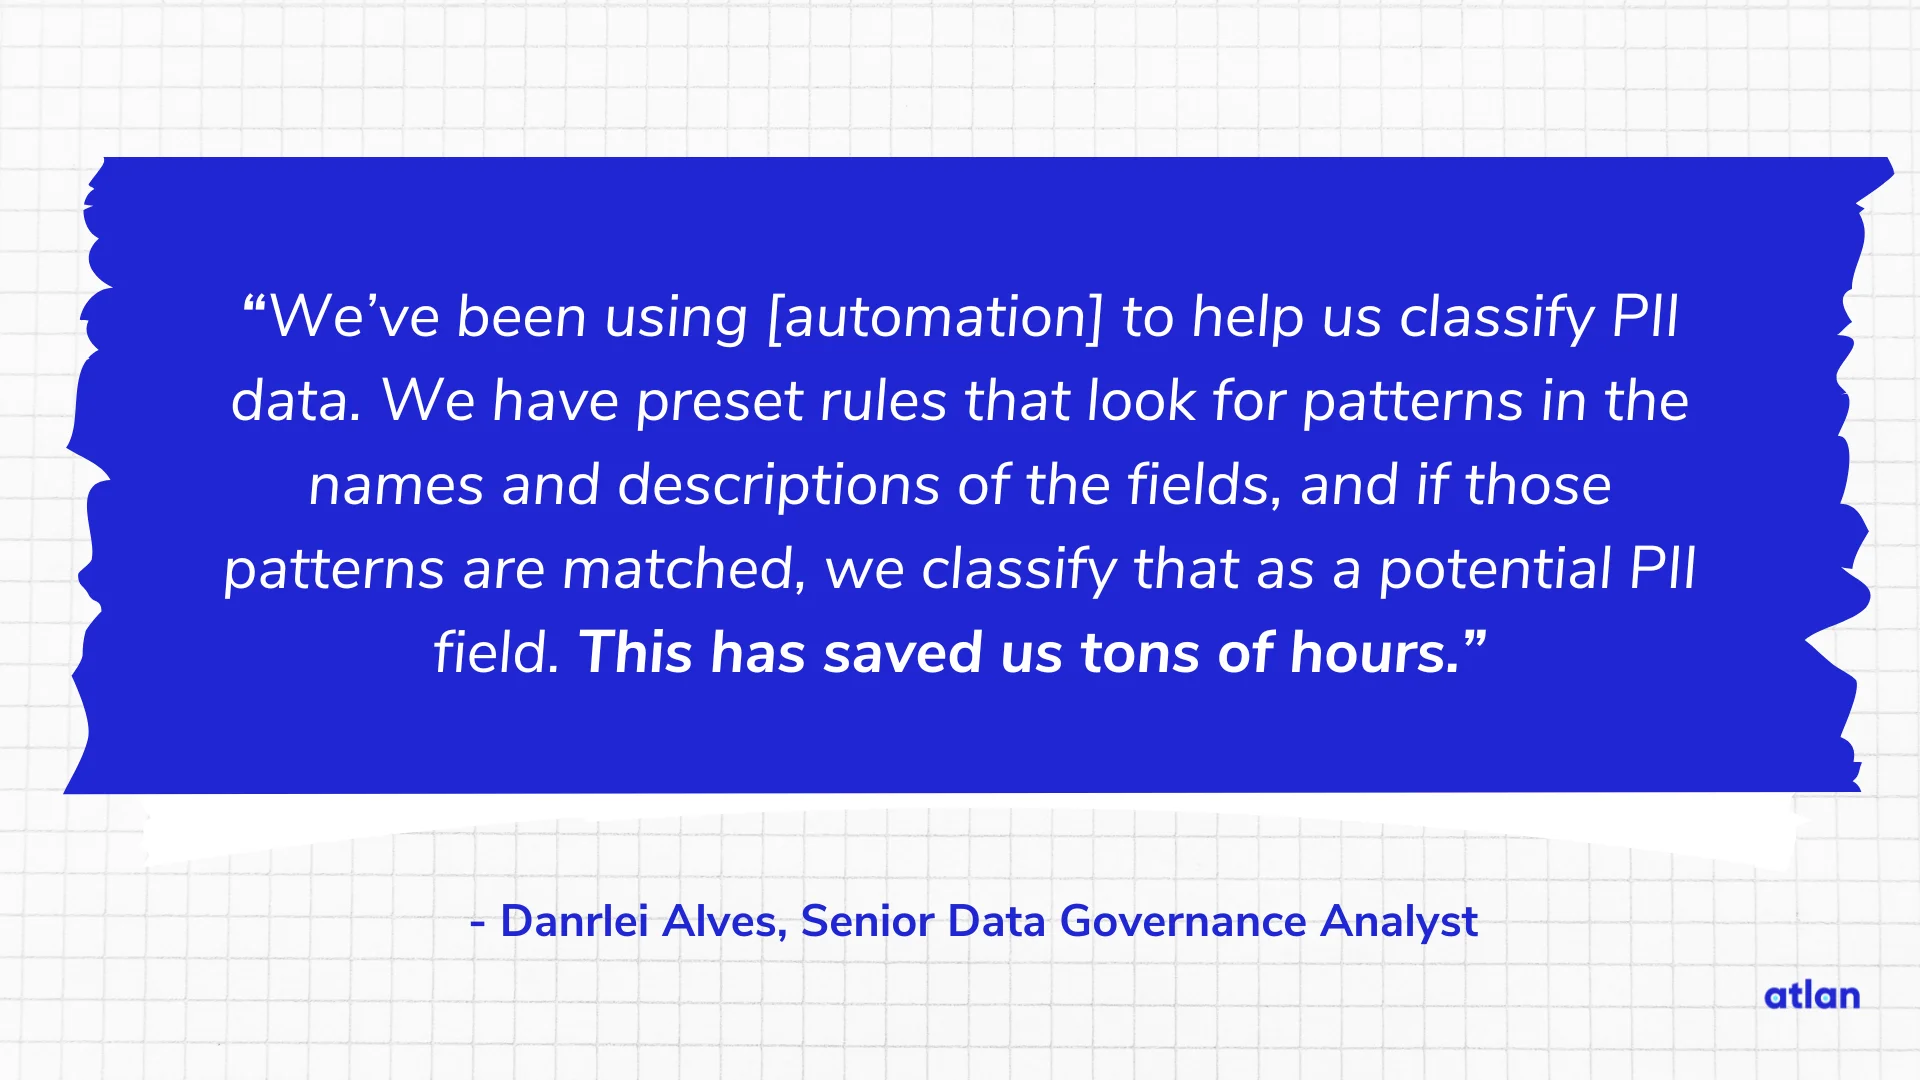 Danrlei Alves, Senior Data Governance Analyst